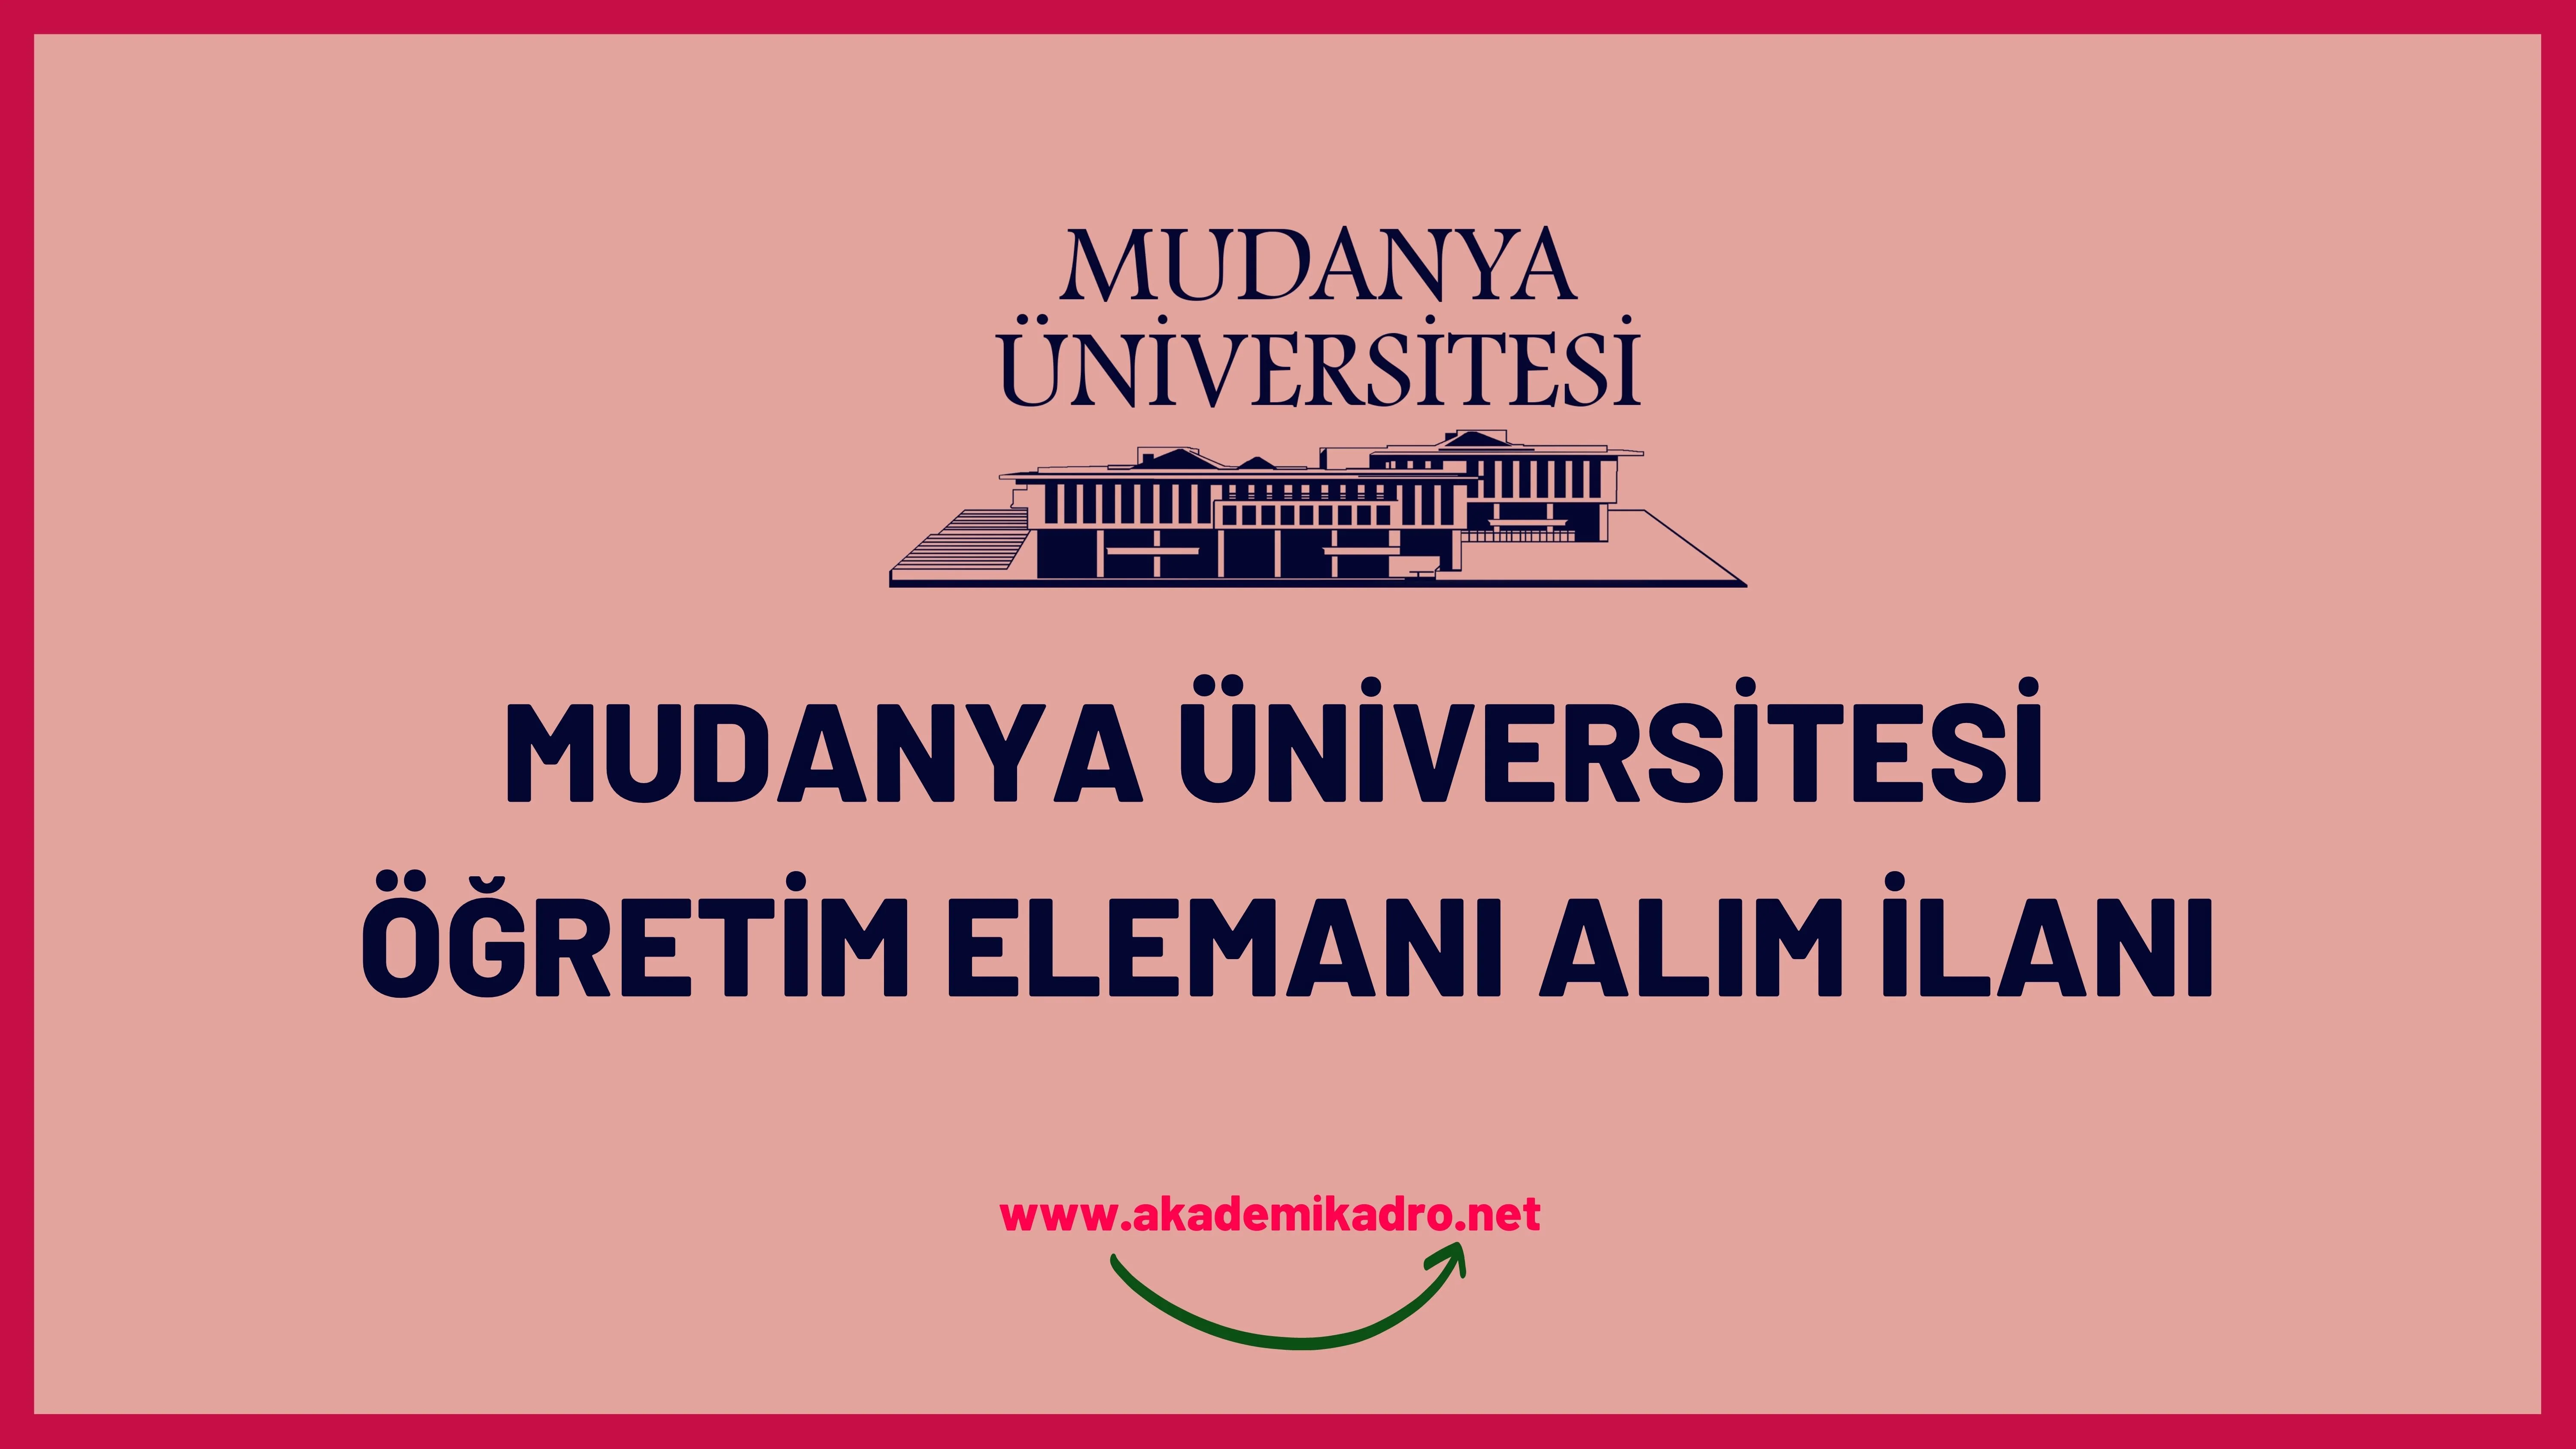 Mudanya Üniversitesi 4 Araştırma görevlisi ve 8 Öğretim üyesi alacak.